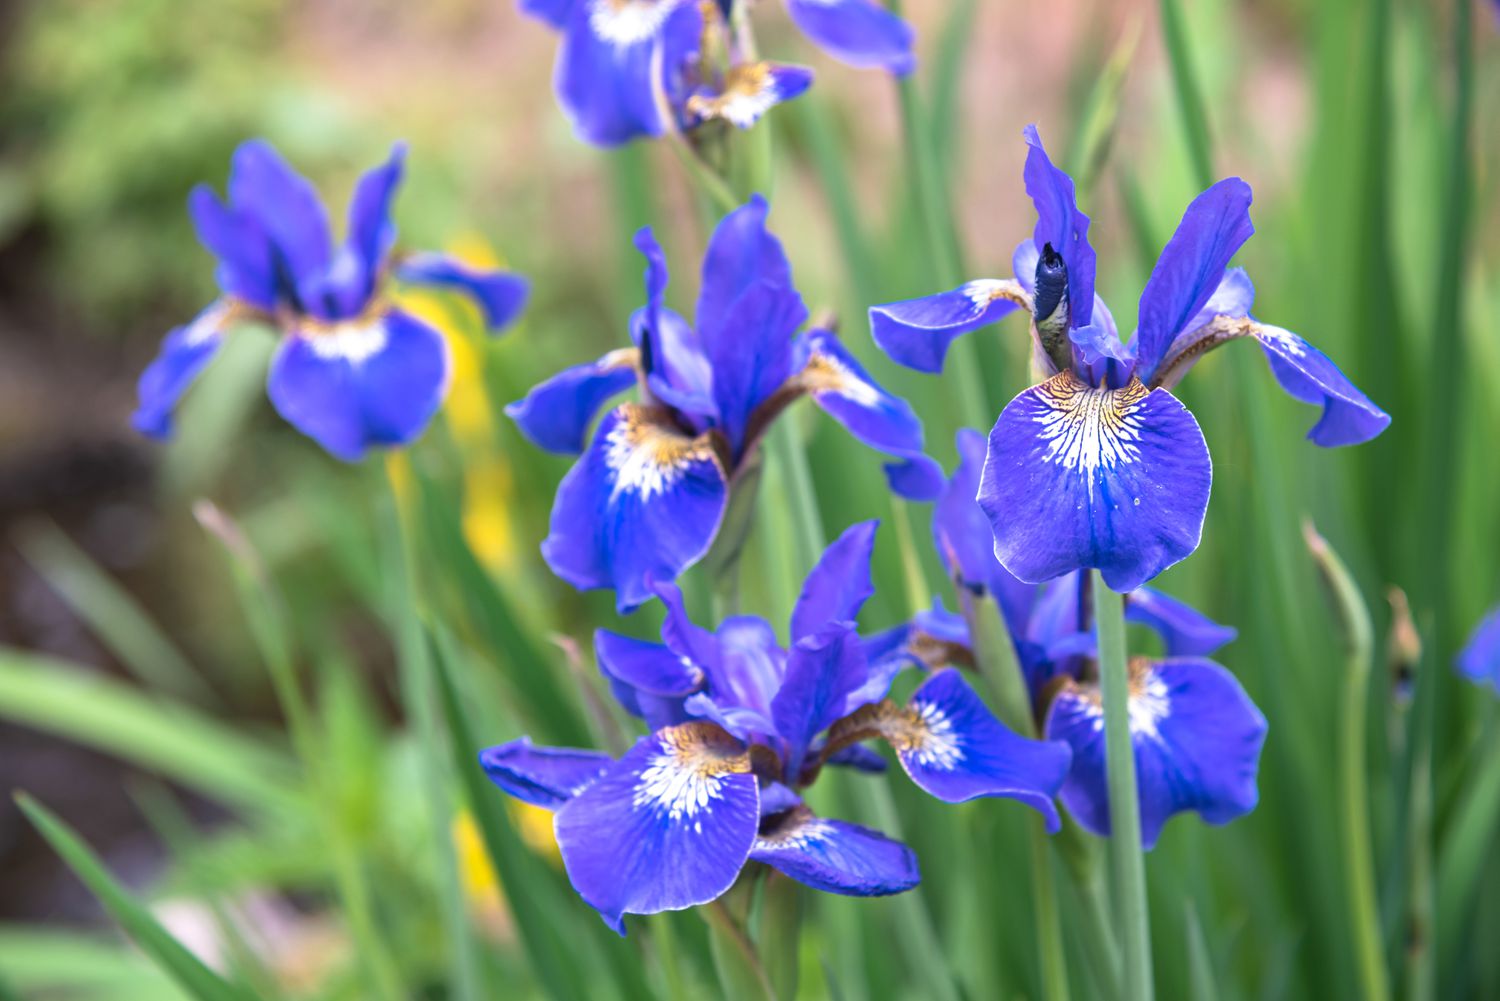 Sibirische Schwertlilienpflanze mit violett-blauen Blüten mit weißer und gelber Mitte